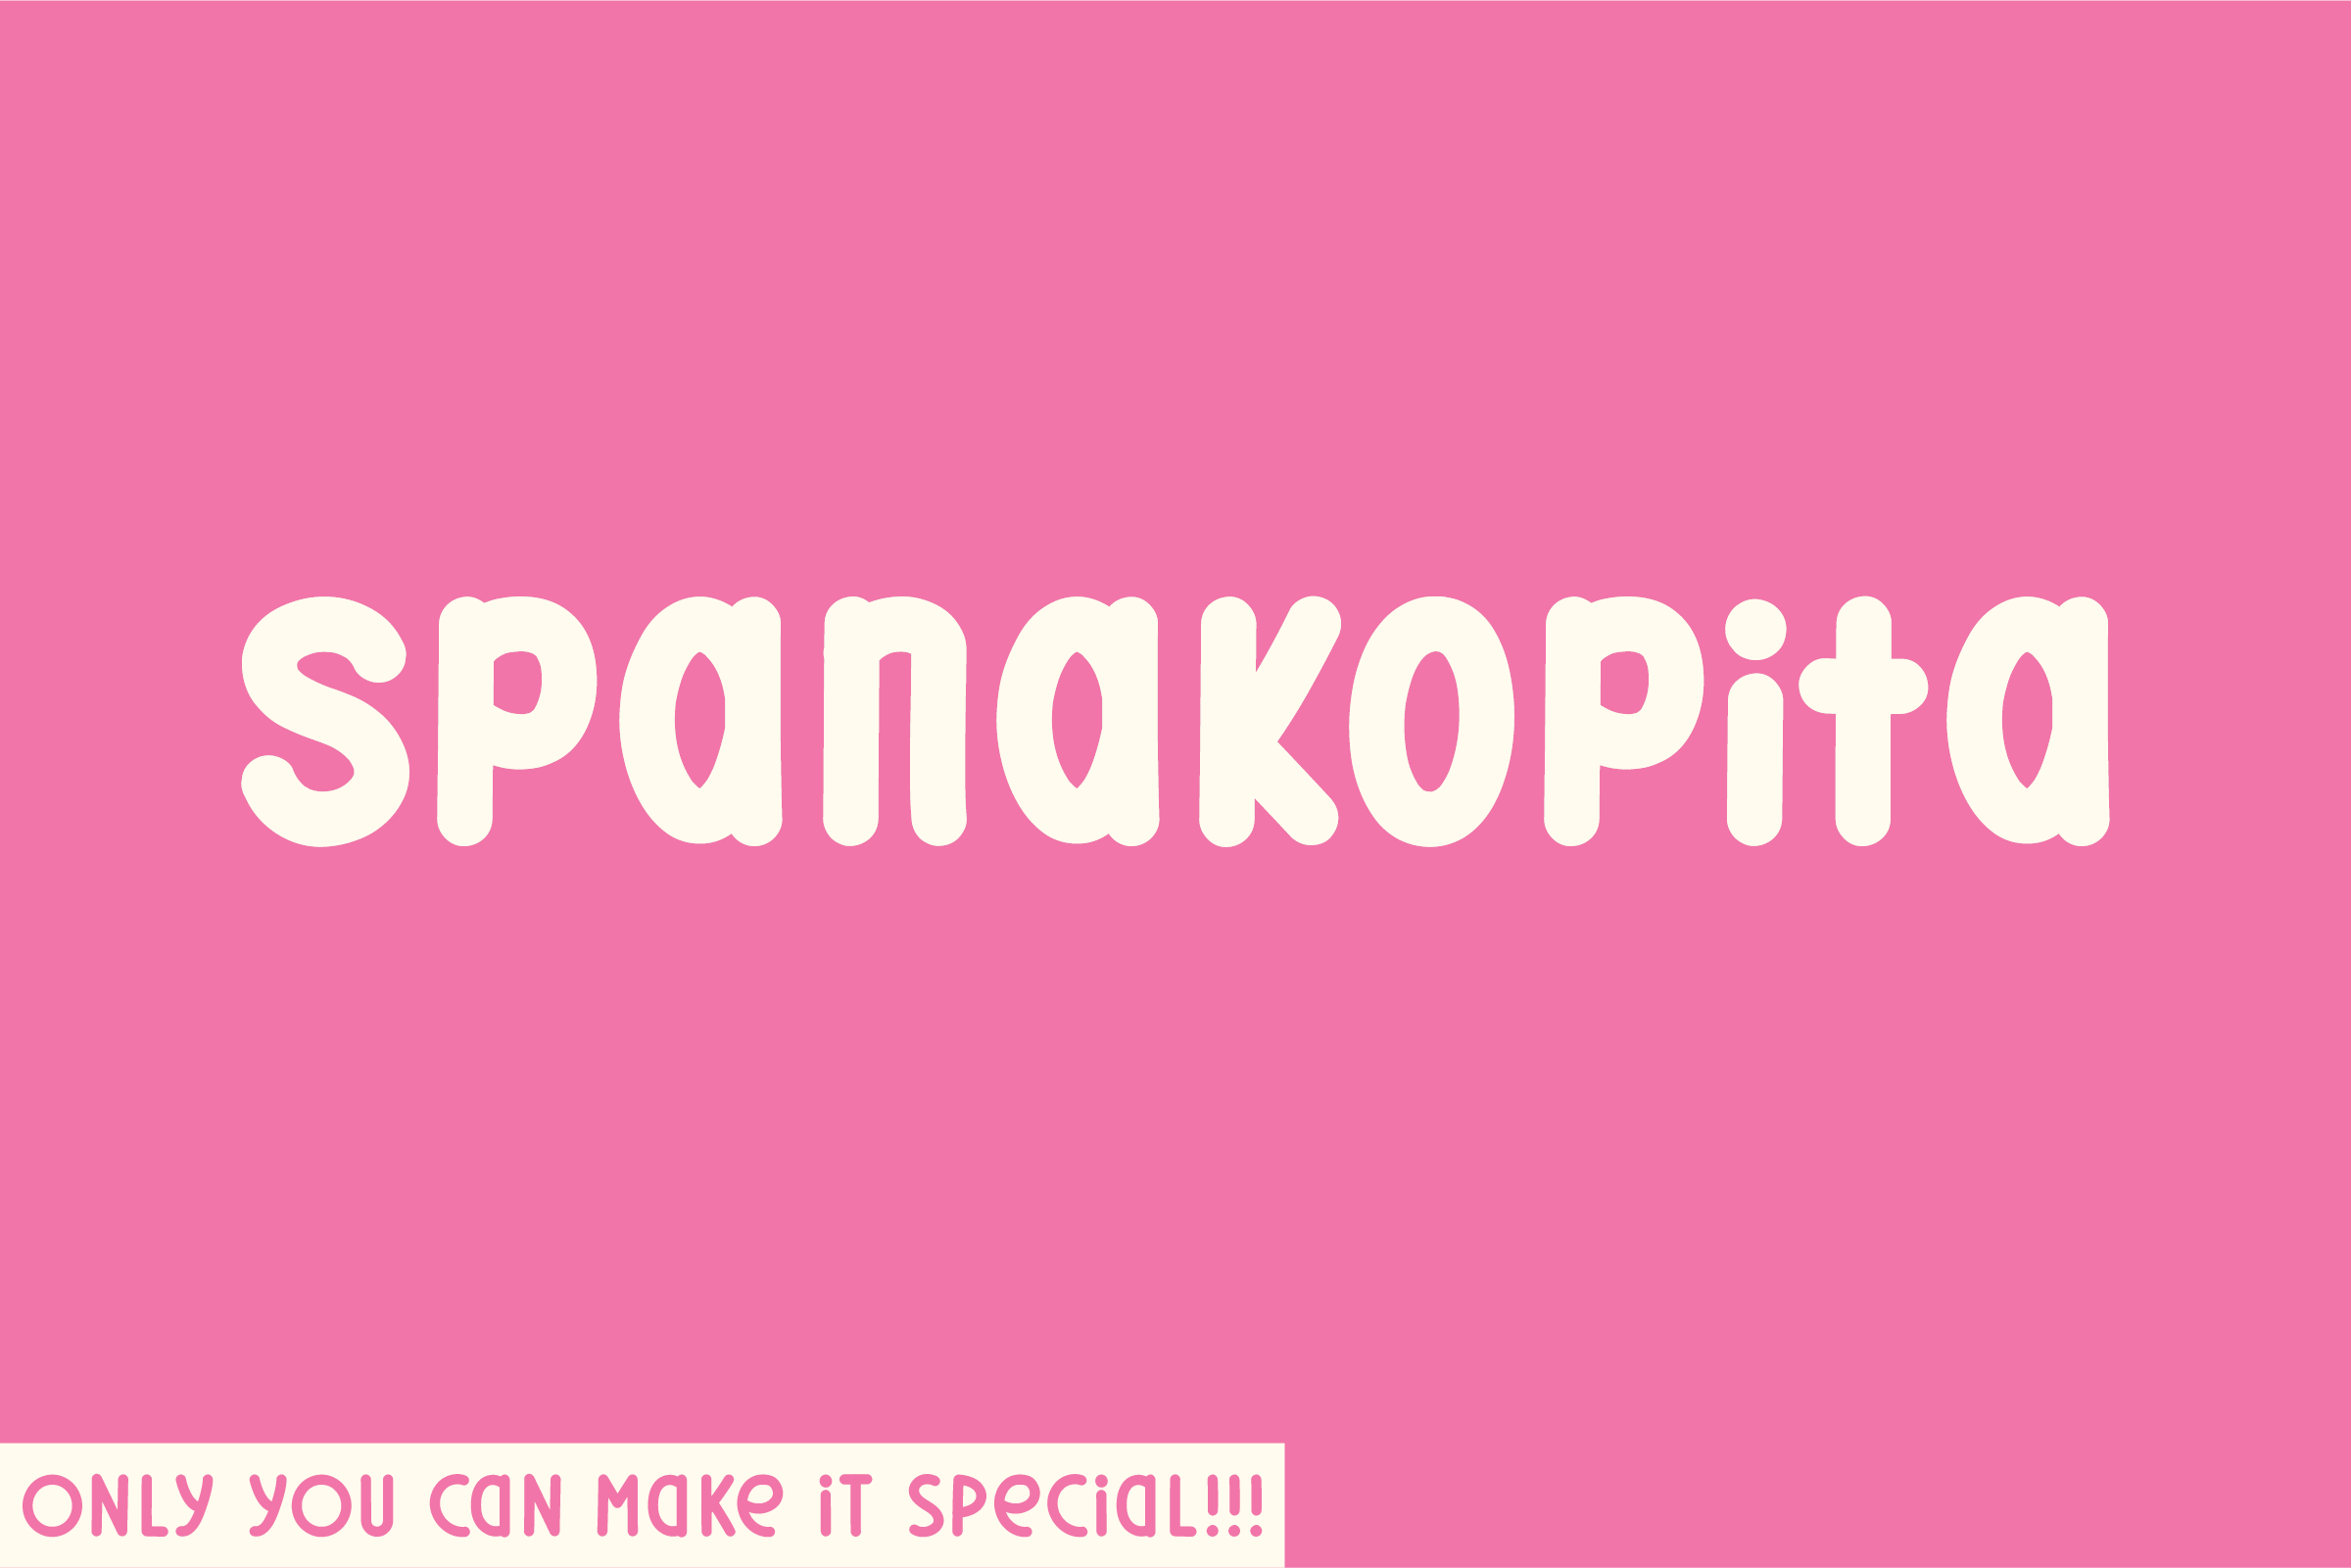 Spanakopita